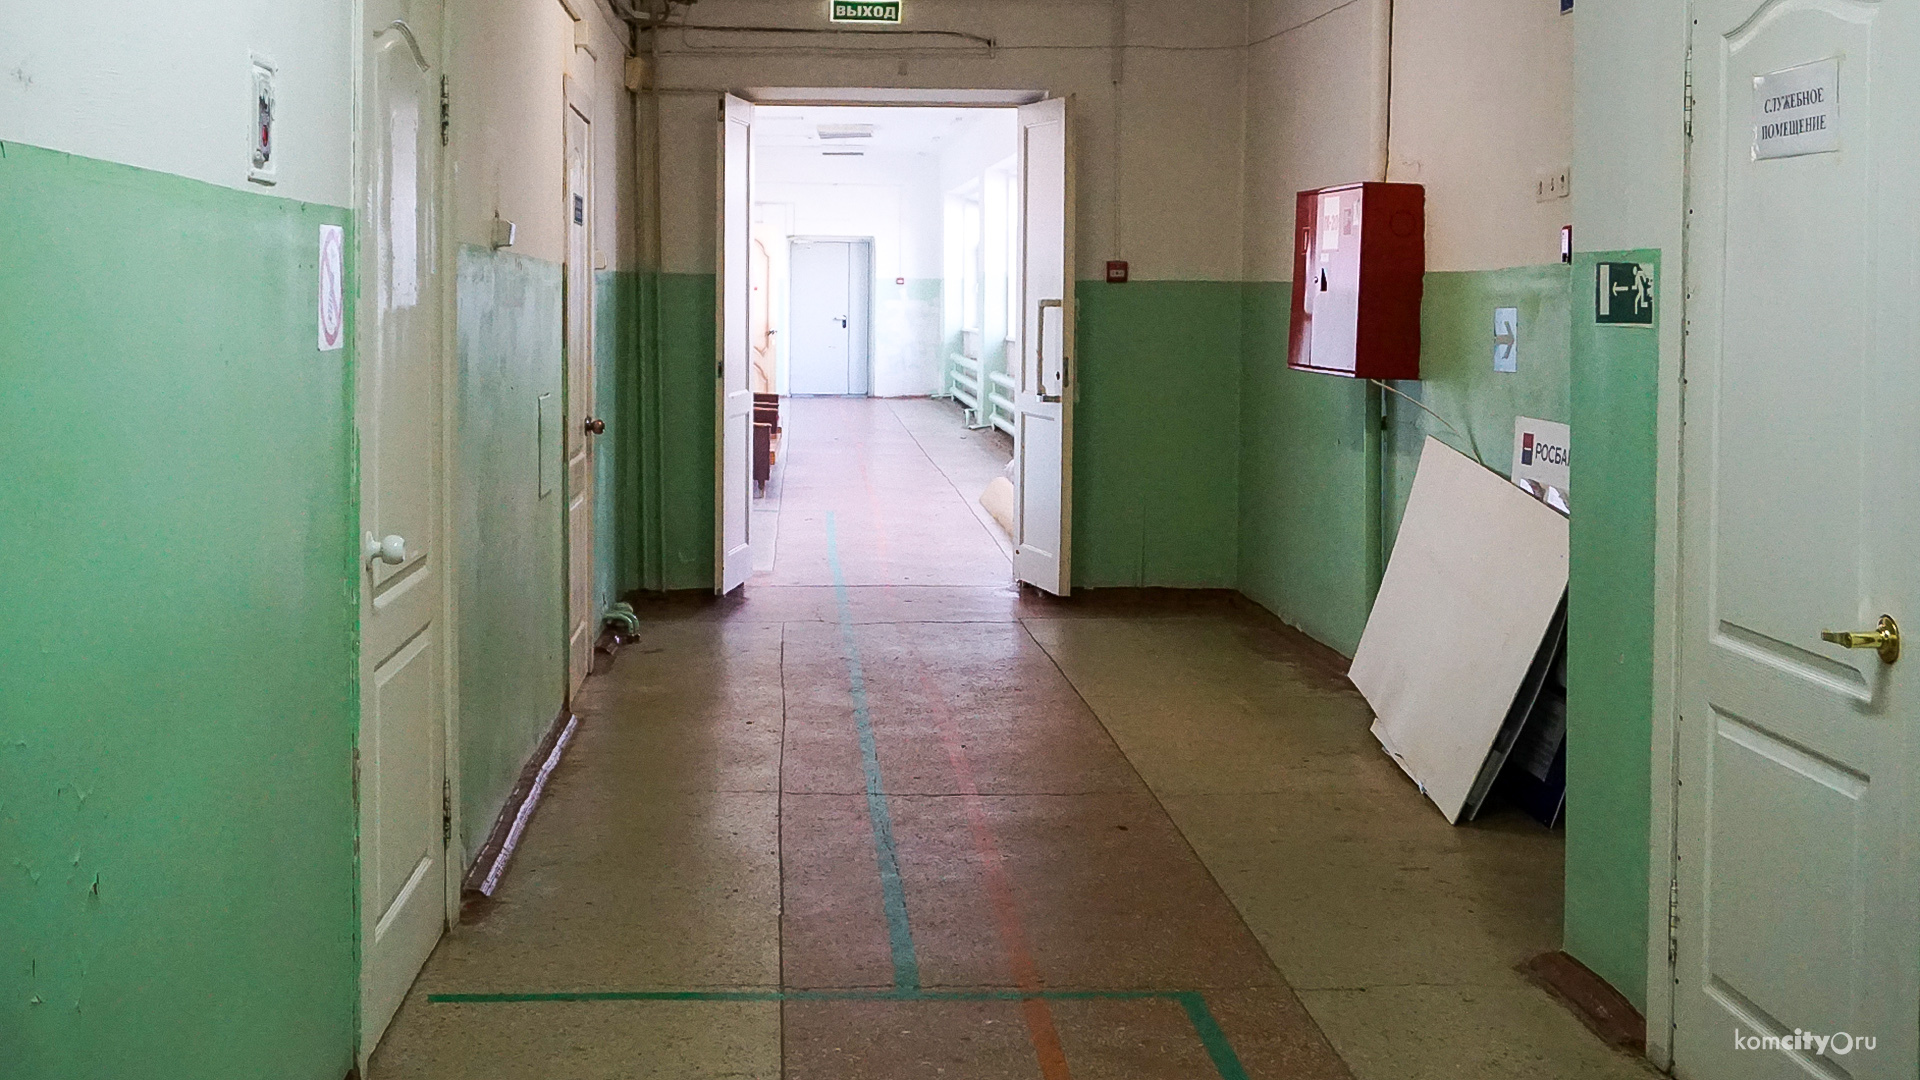 За сутки в больницы Комсомольска госпитализирован 121 пациент с пневмонией